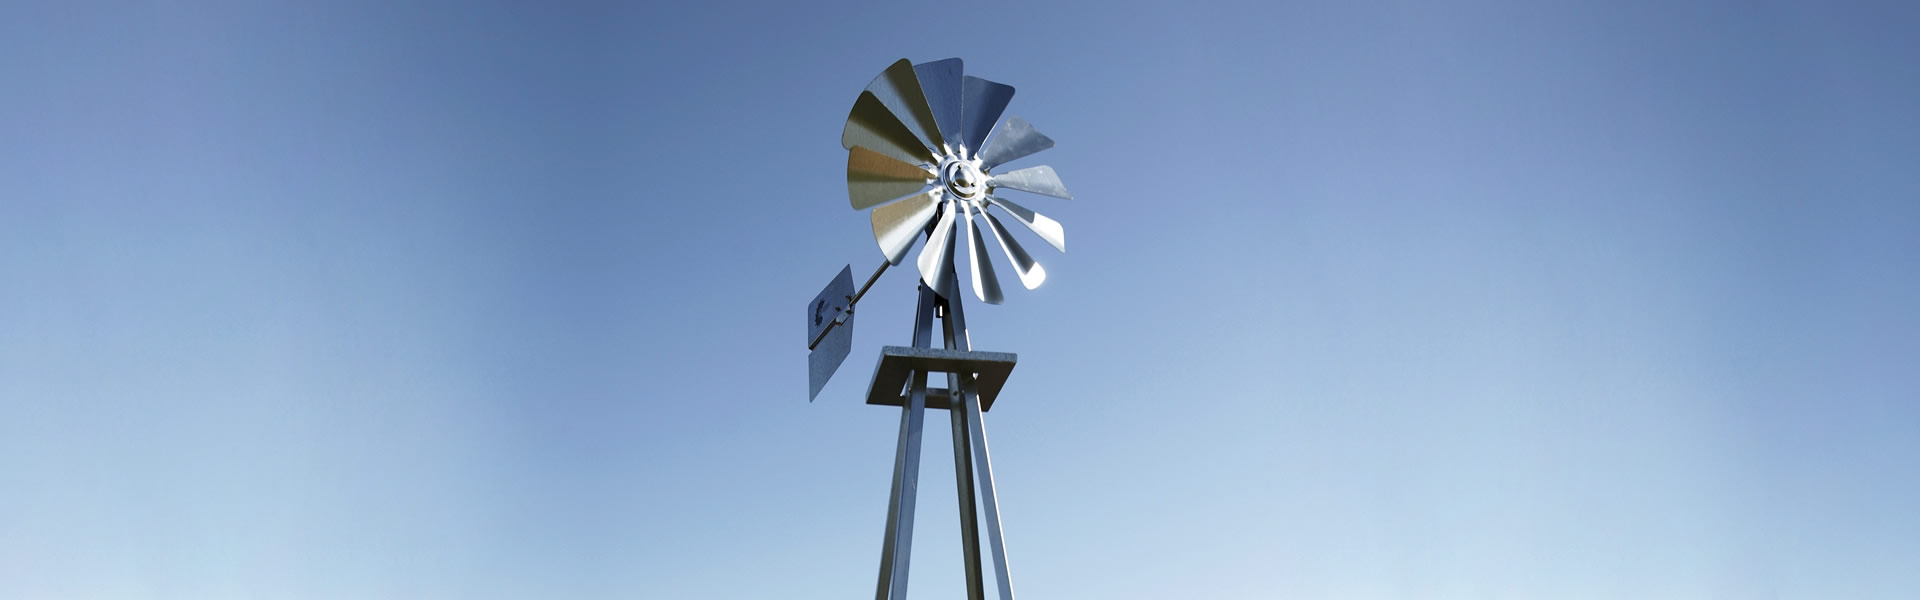 miniature windmills for sale